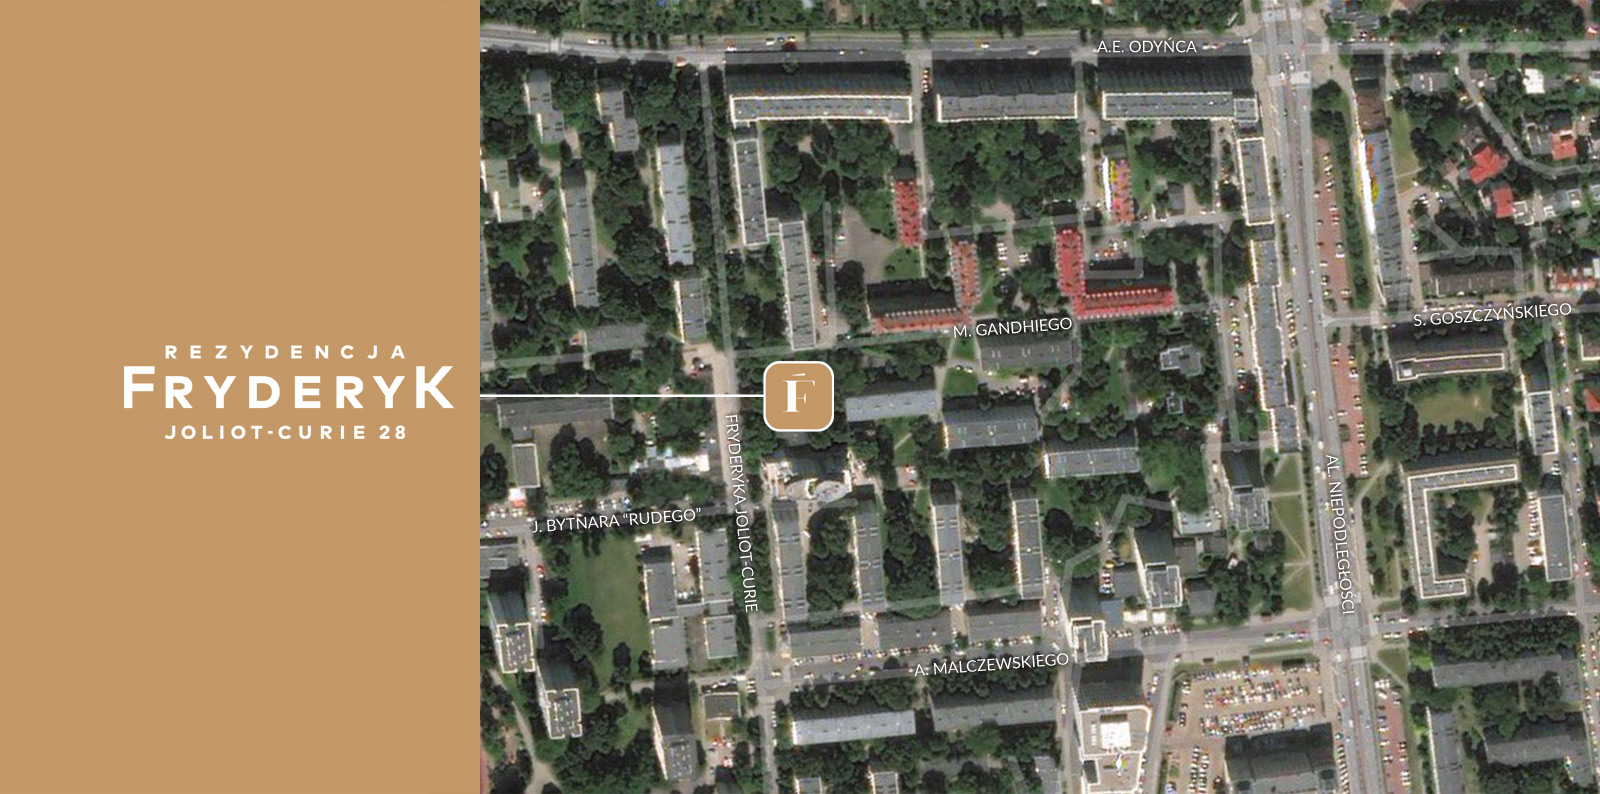 Rezydencja Fryderyk - lokalizacja - widok satelitarny